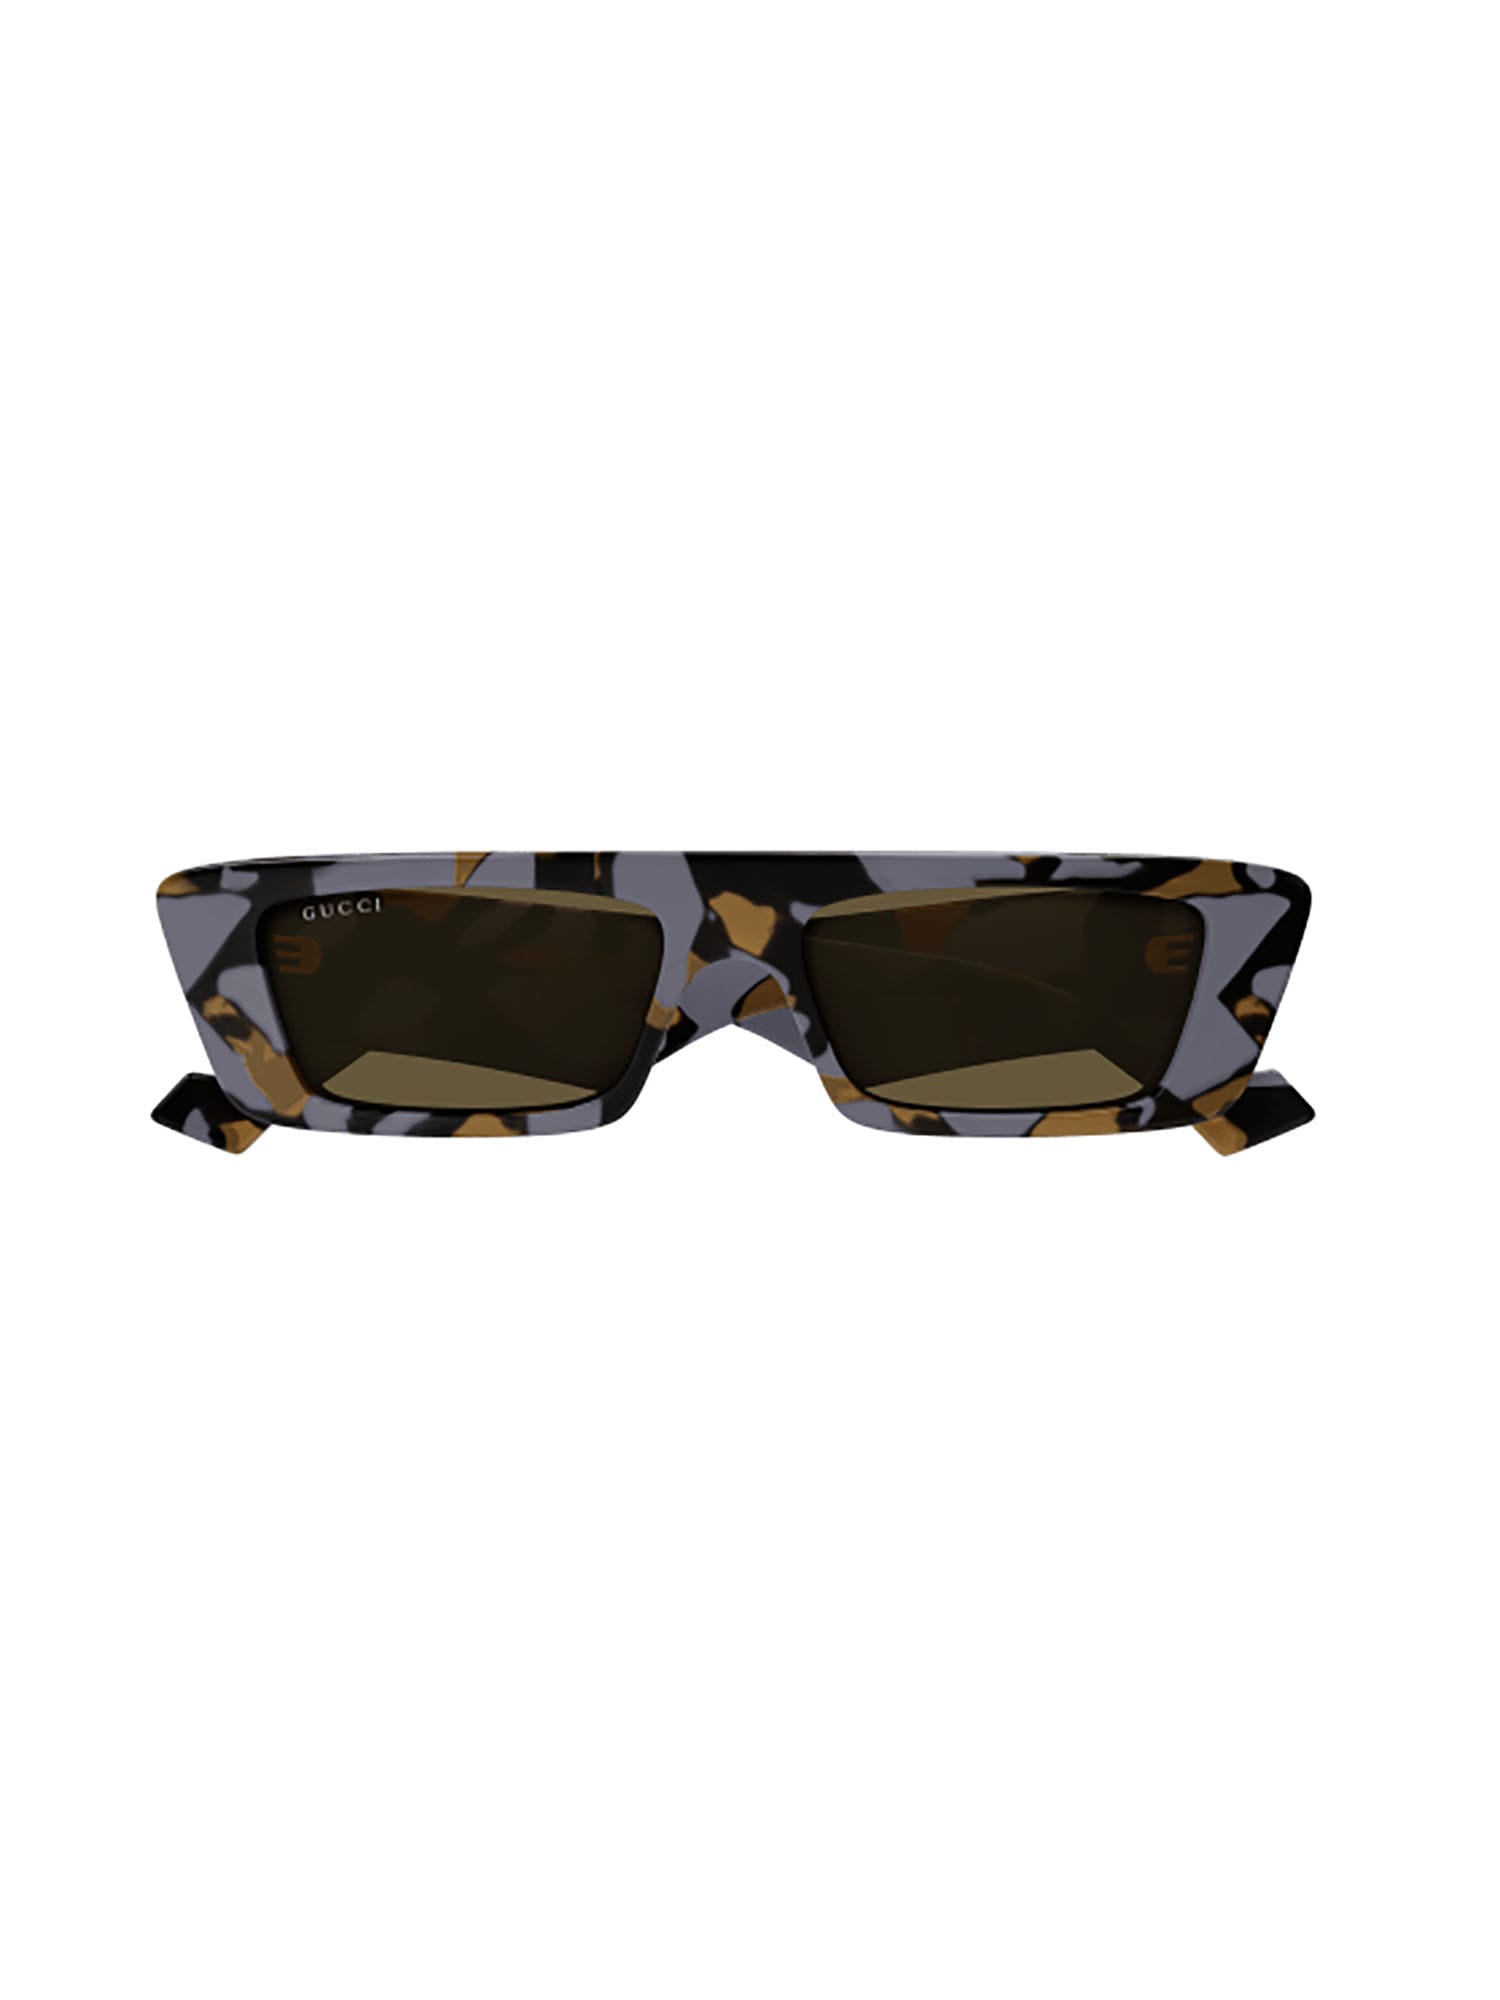 Gucci Gg1331s Sunglasses In Havana Havana Brown